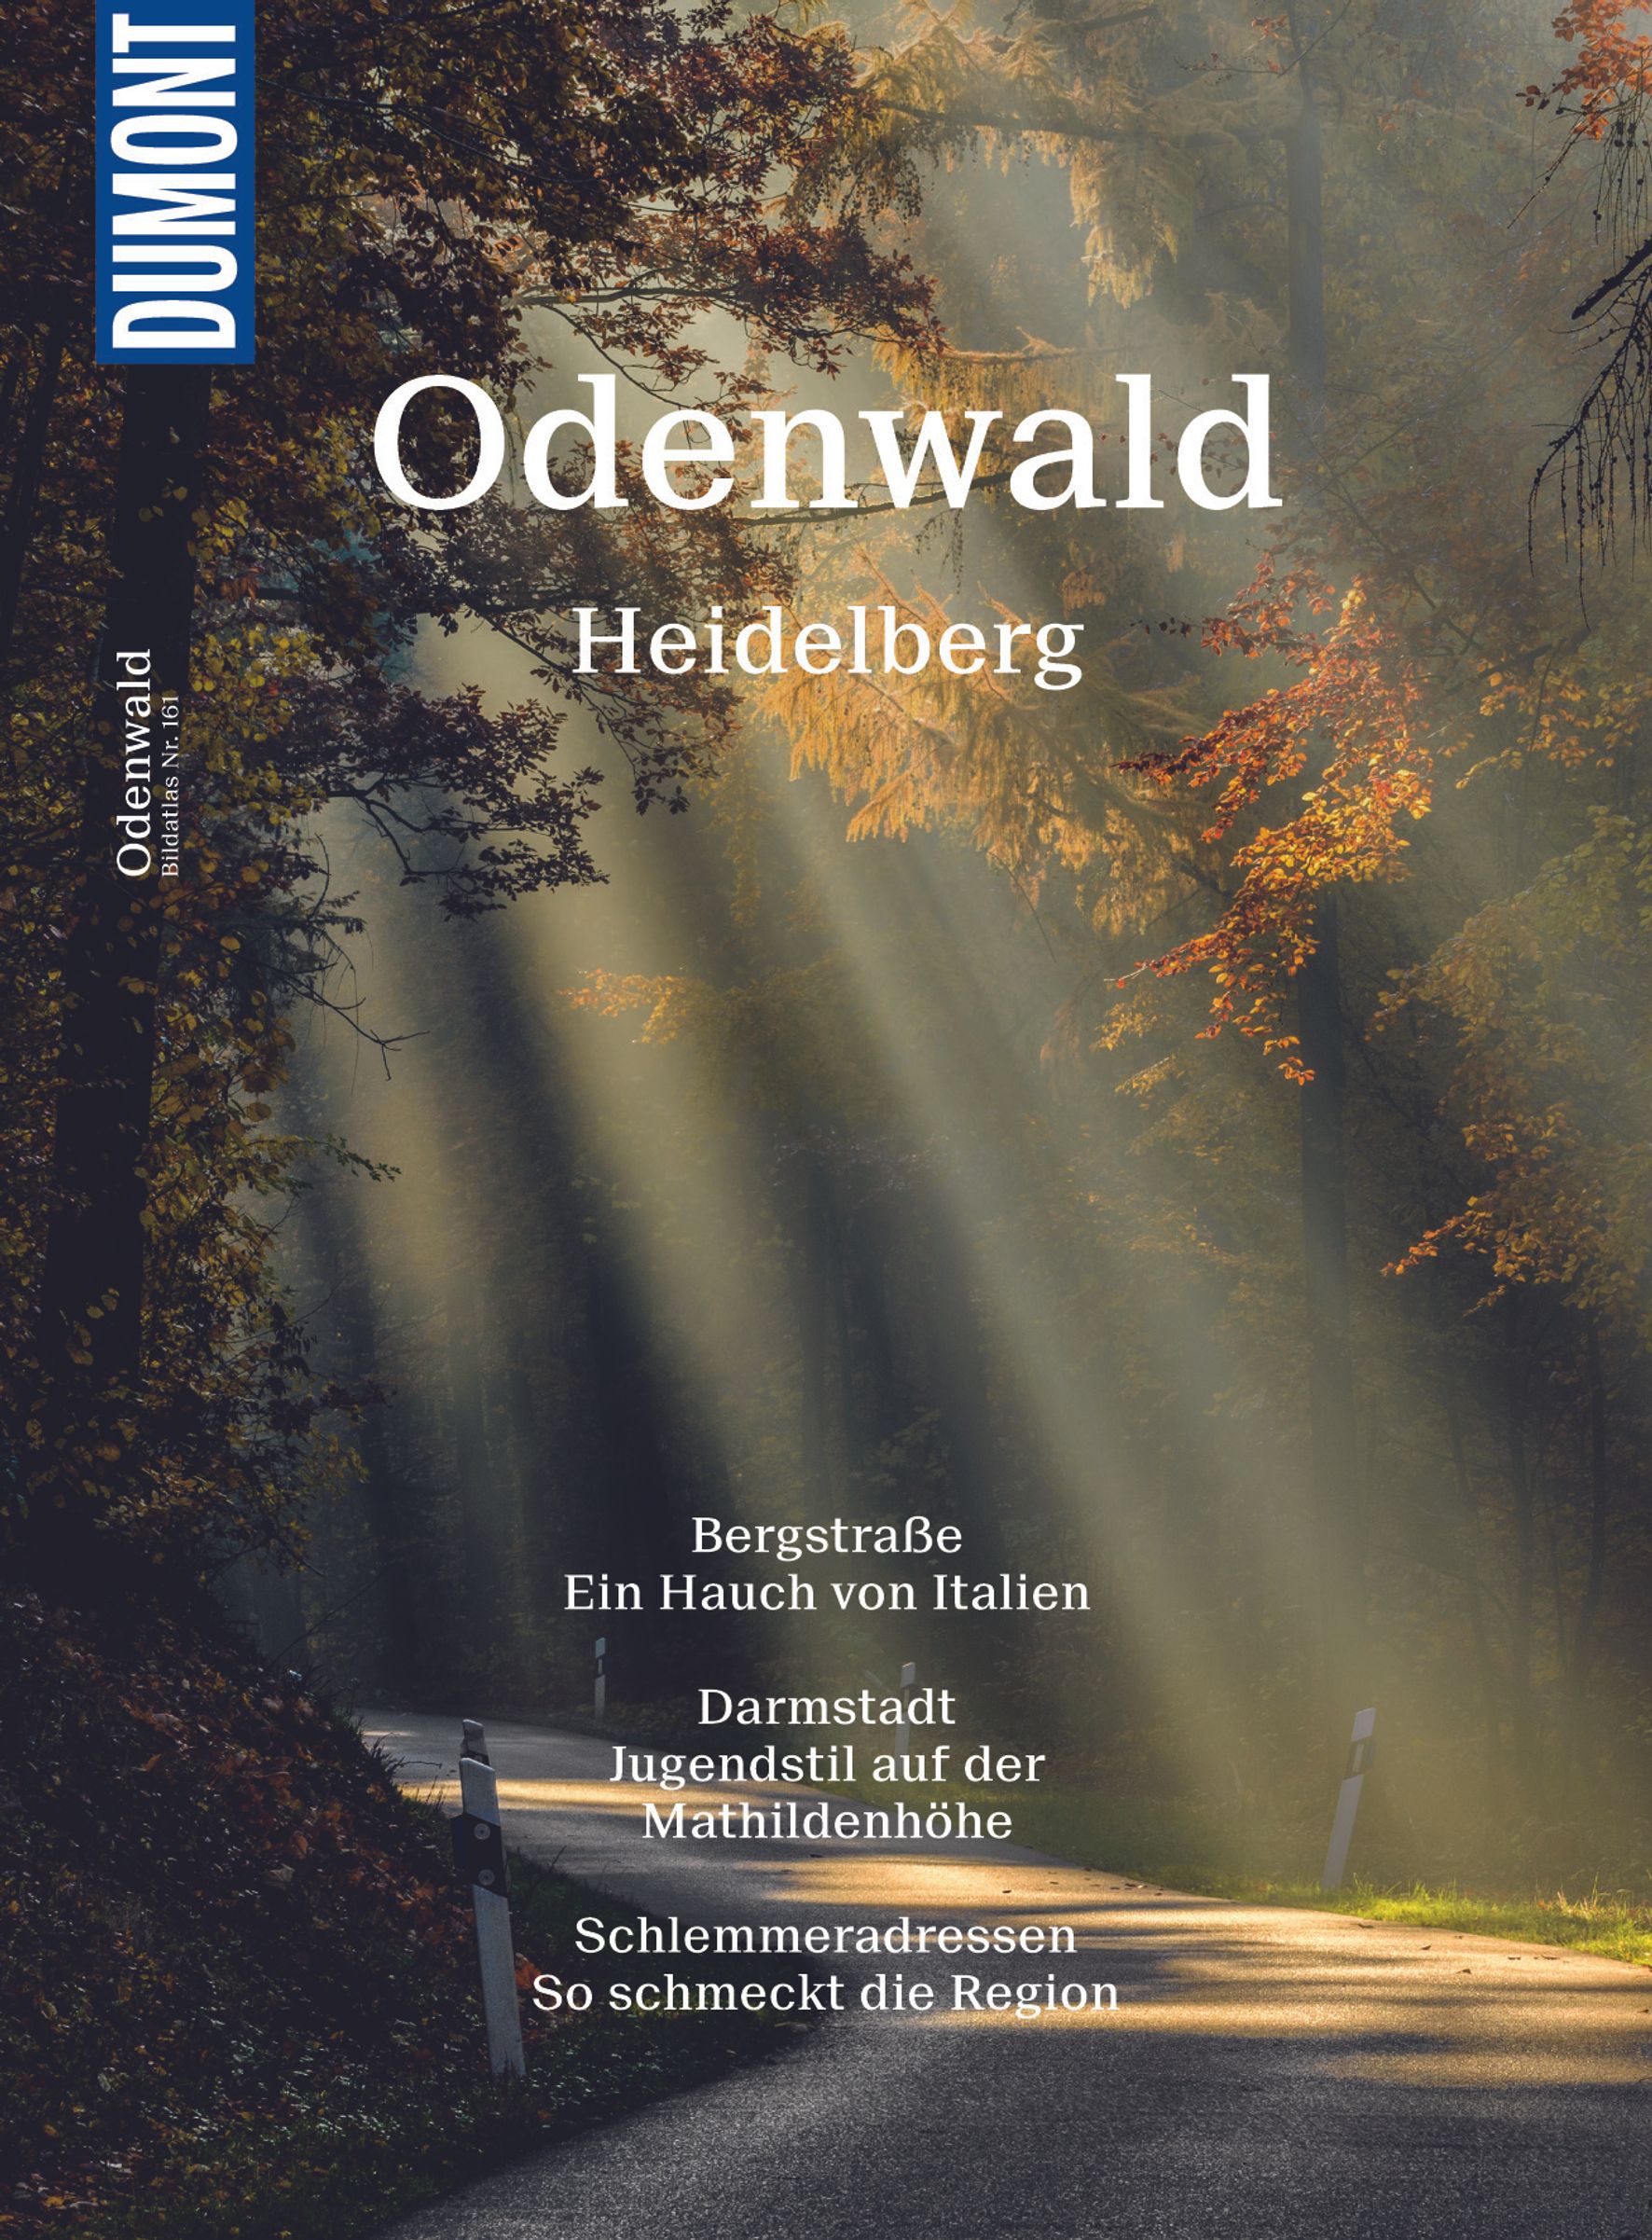 MAIRDUMONT Odenwald, Heidelberg (eBook)